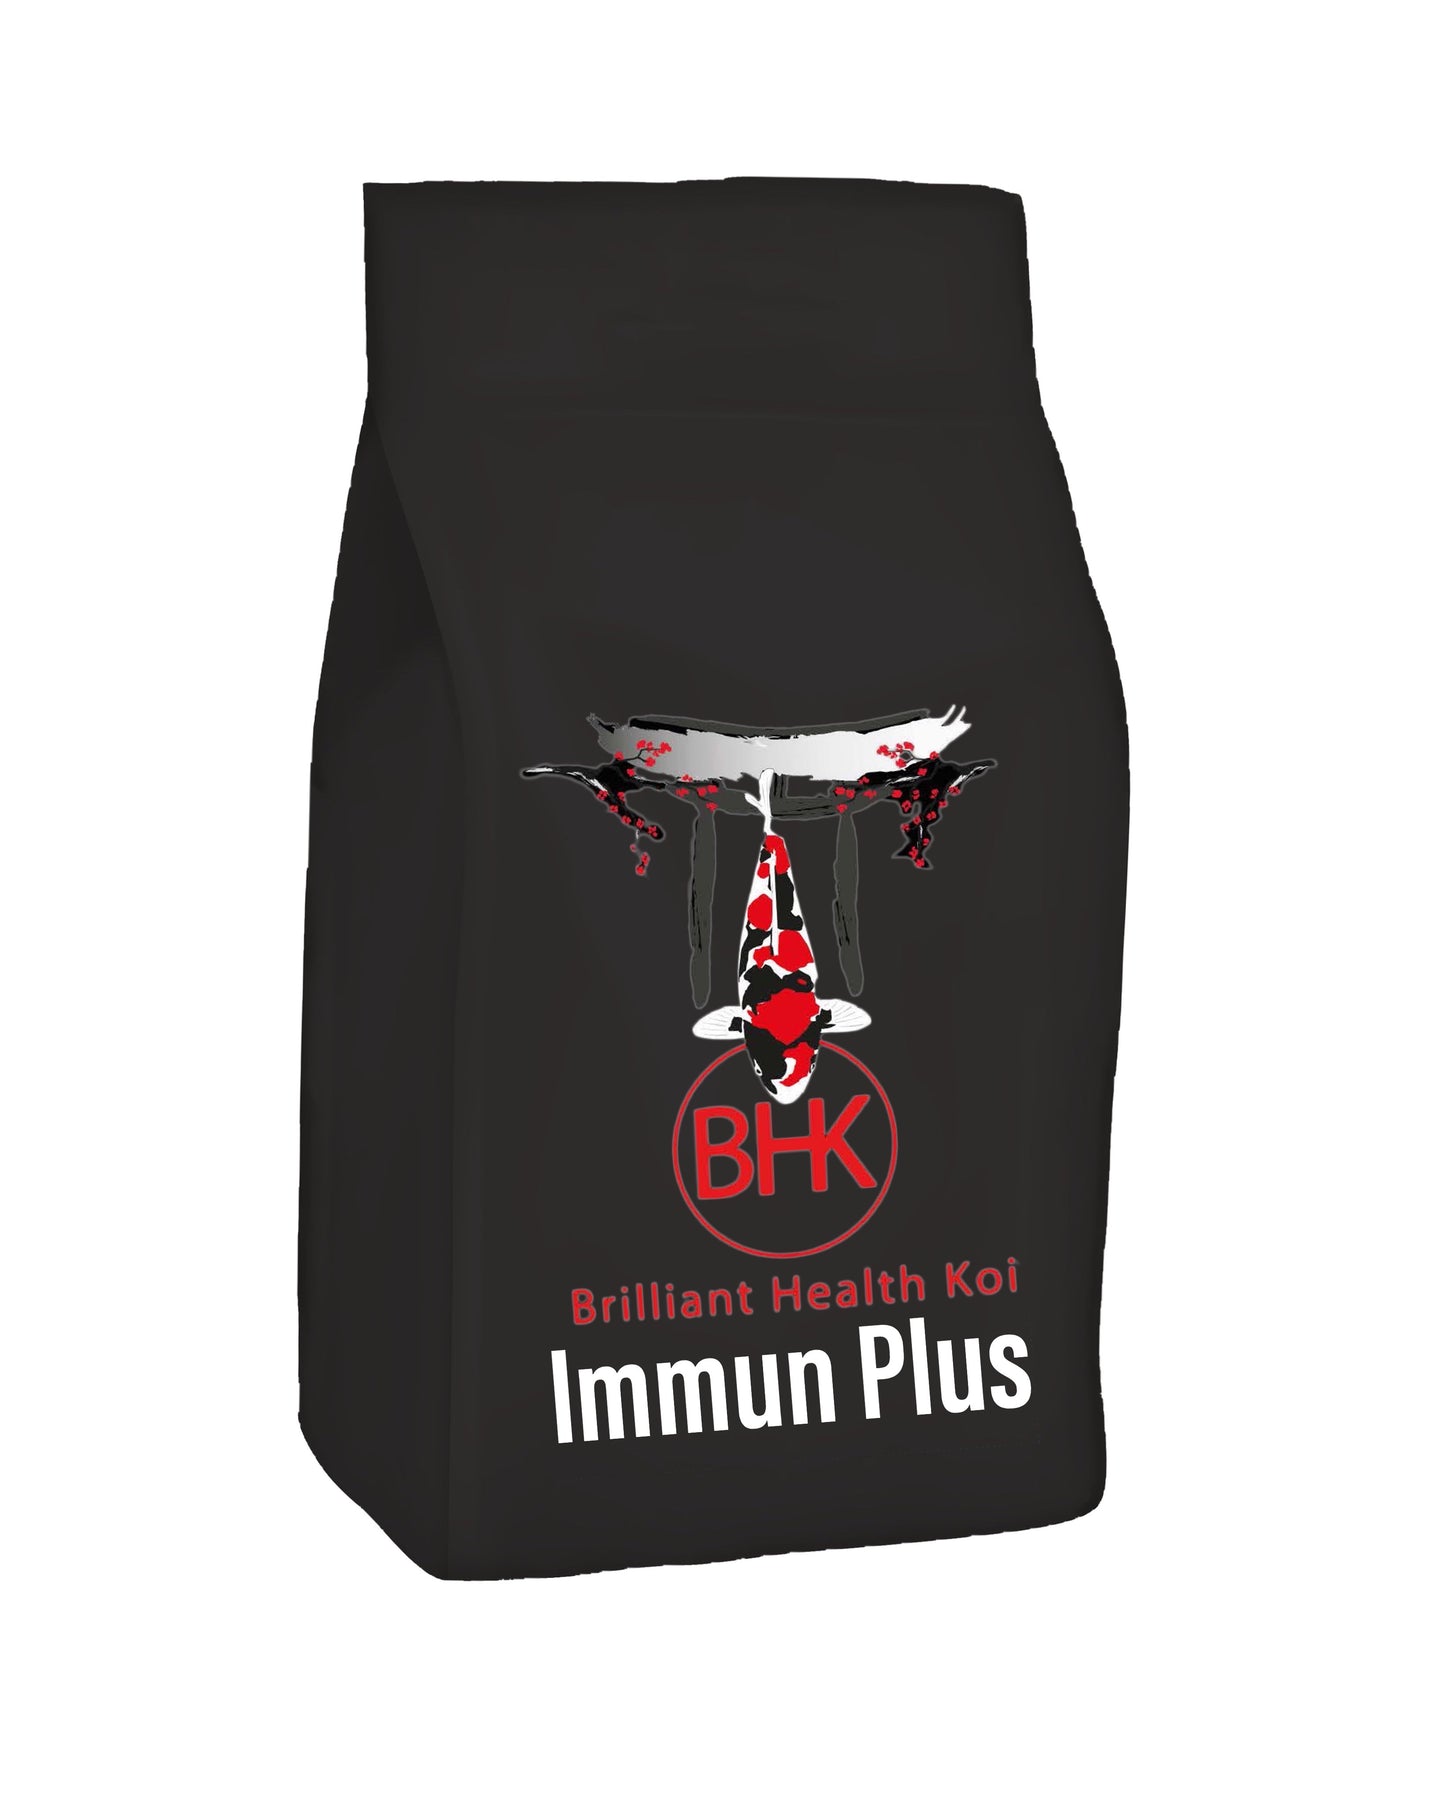 BHK Immun Plus